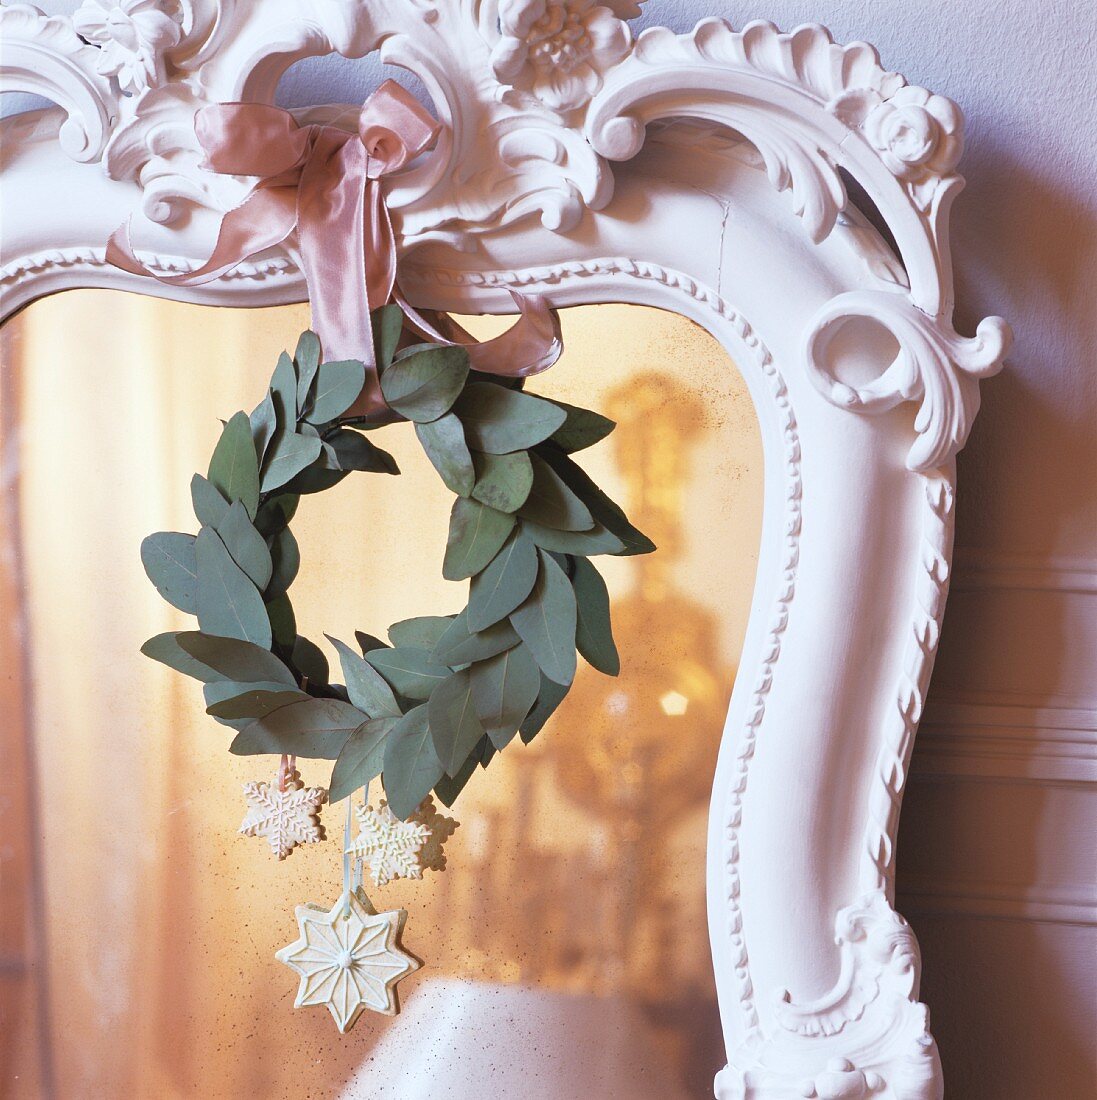 Weihnachtsdeko und Blätterkranz hängend an Spiegel mit weissen verziertem Holzrahmen